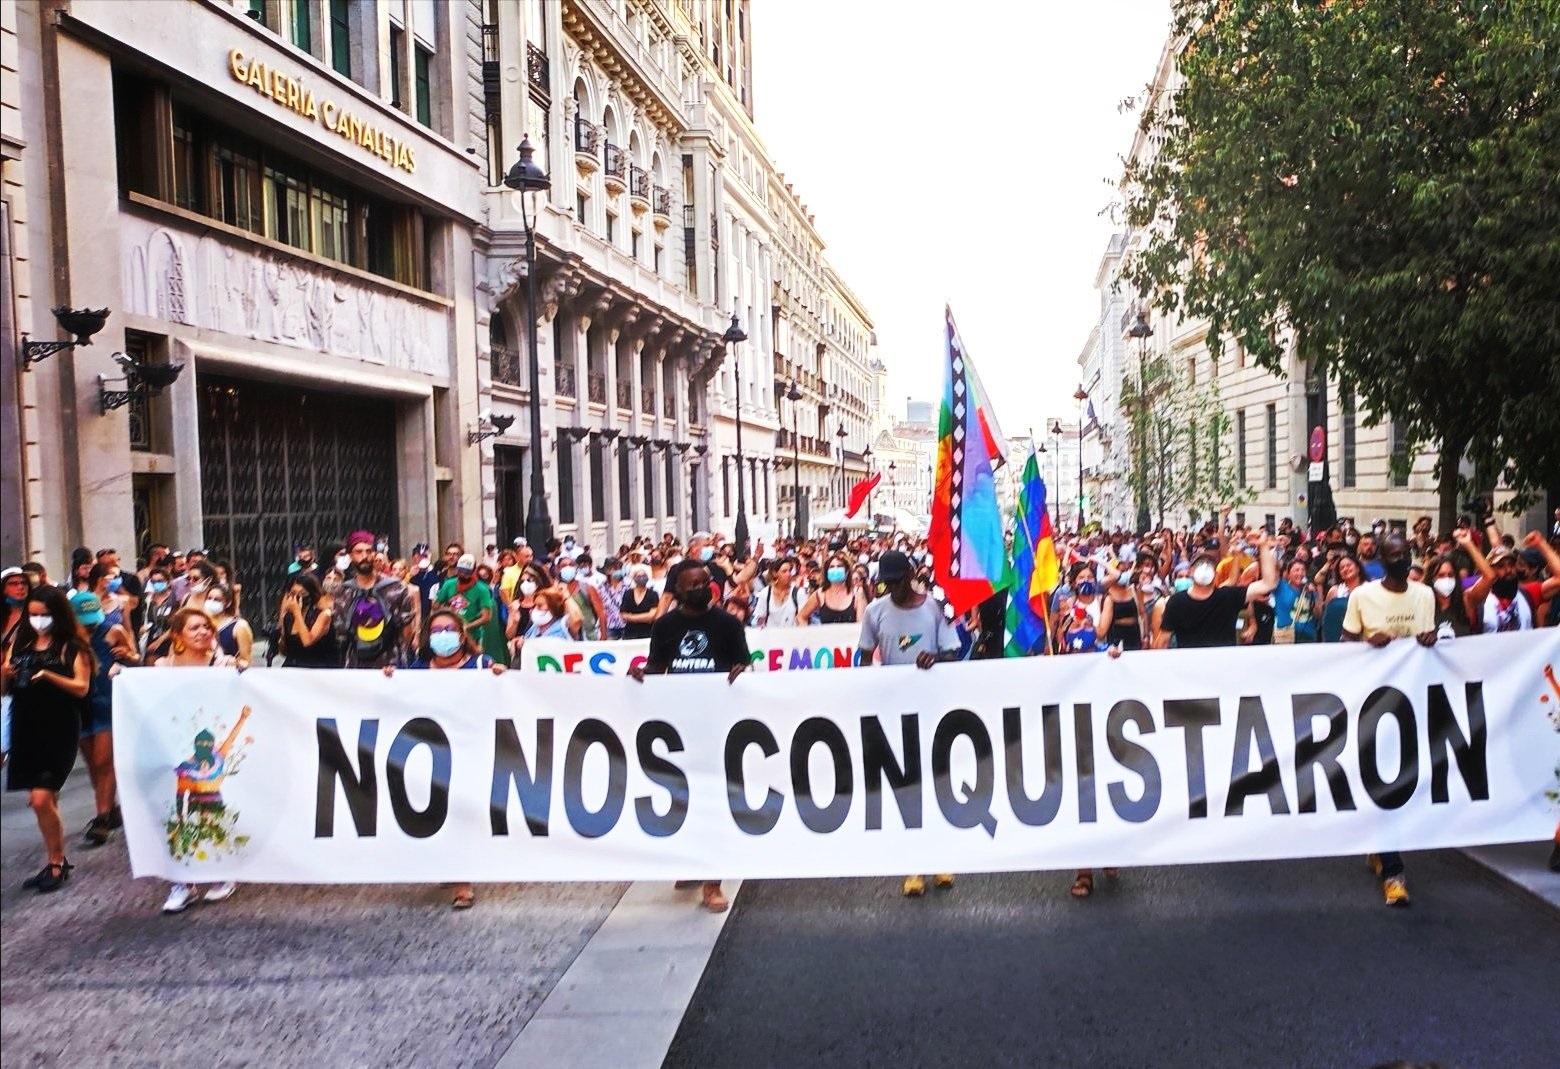 Zapatistalar işgalin 500. yılında Madrid’te yürüyüş gerçekleştirdi: Bizi fethedemediler, teslim olmayacağız